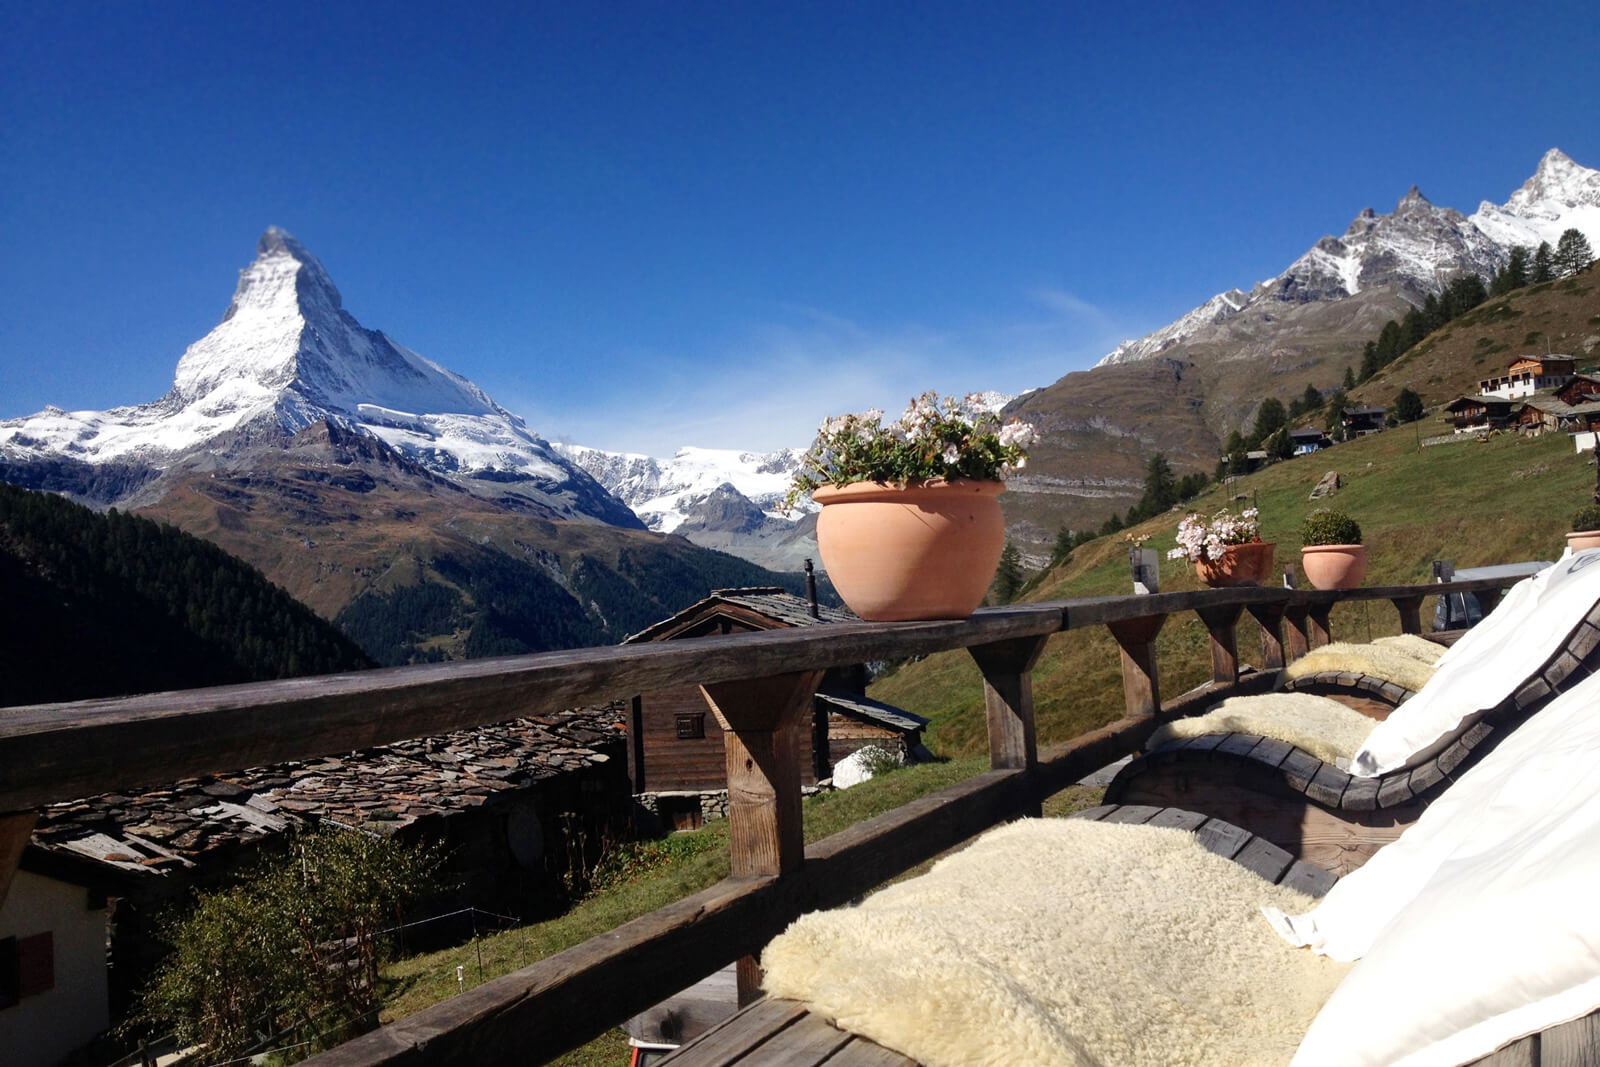 Restaurant Chez Vrony in Zermatt with Matterhorn